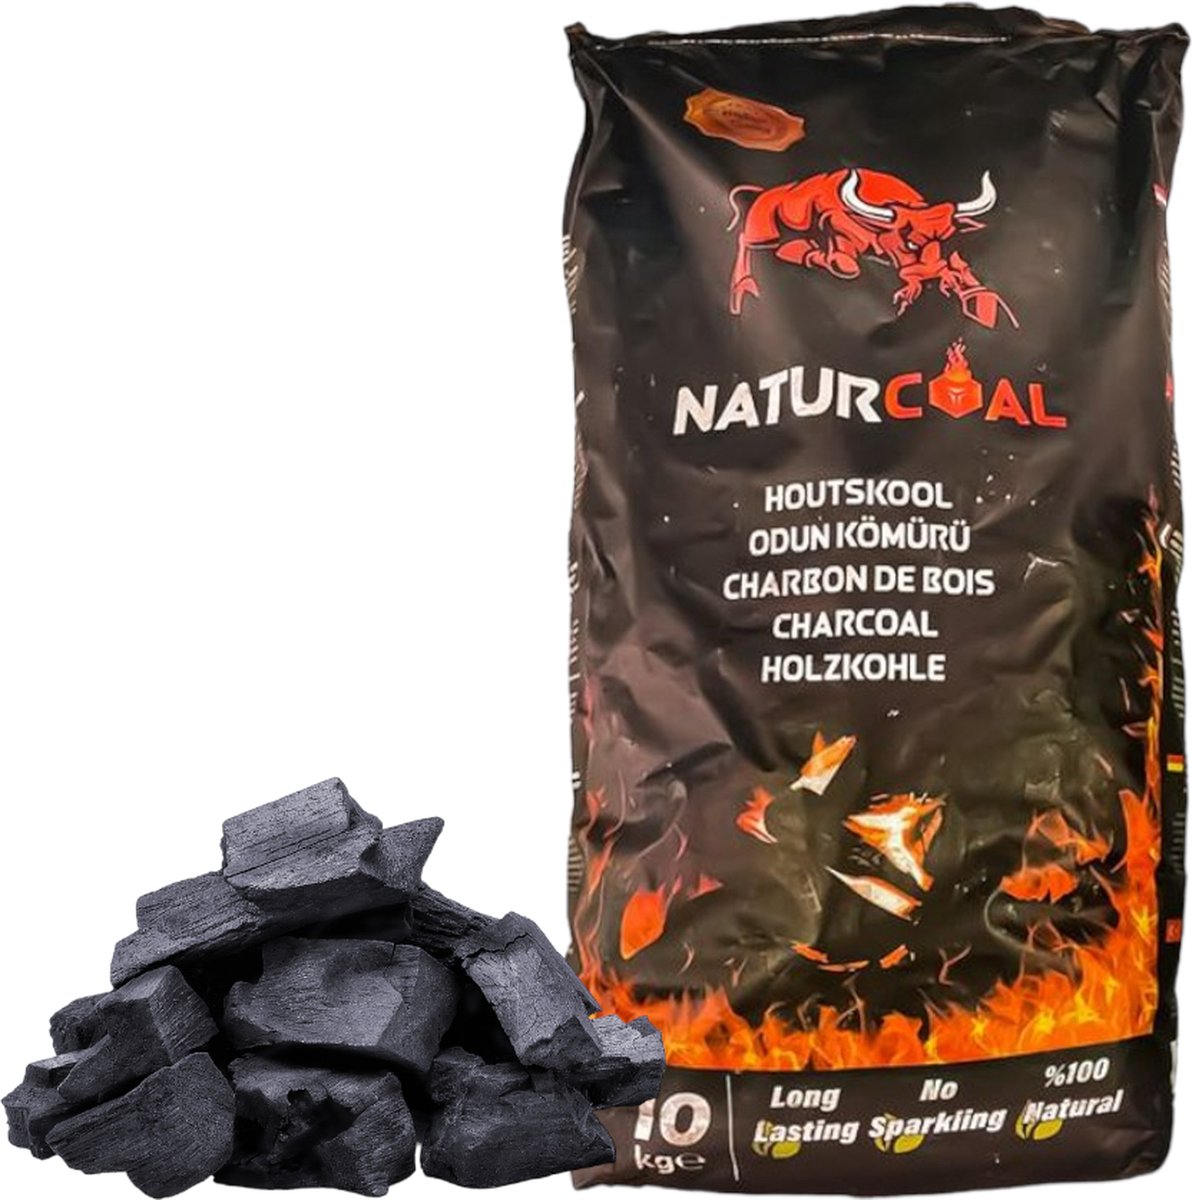 Naturcoal Houtskool - Langduring - Hoge energiewaarde - 100% Natuurlijk - 10kg